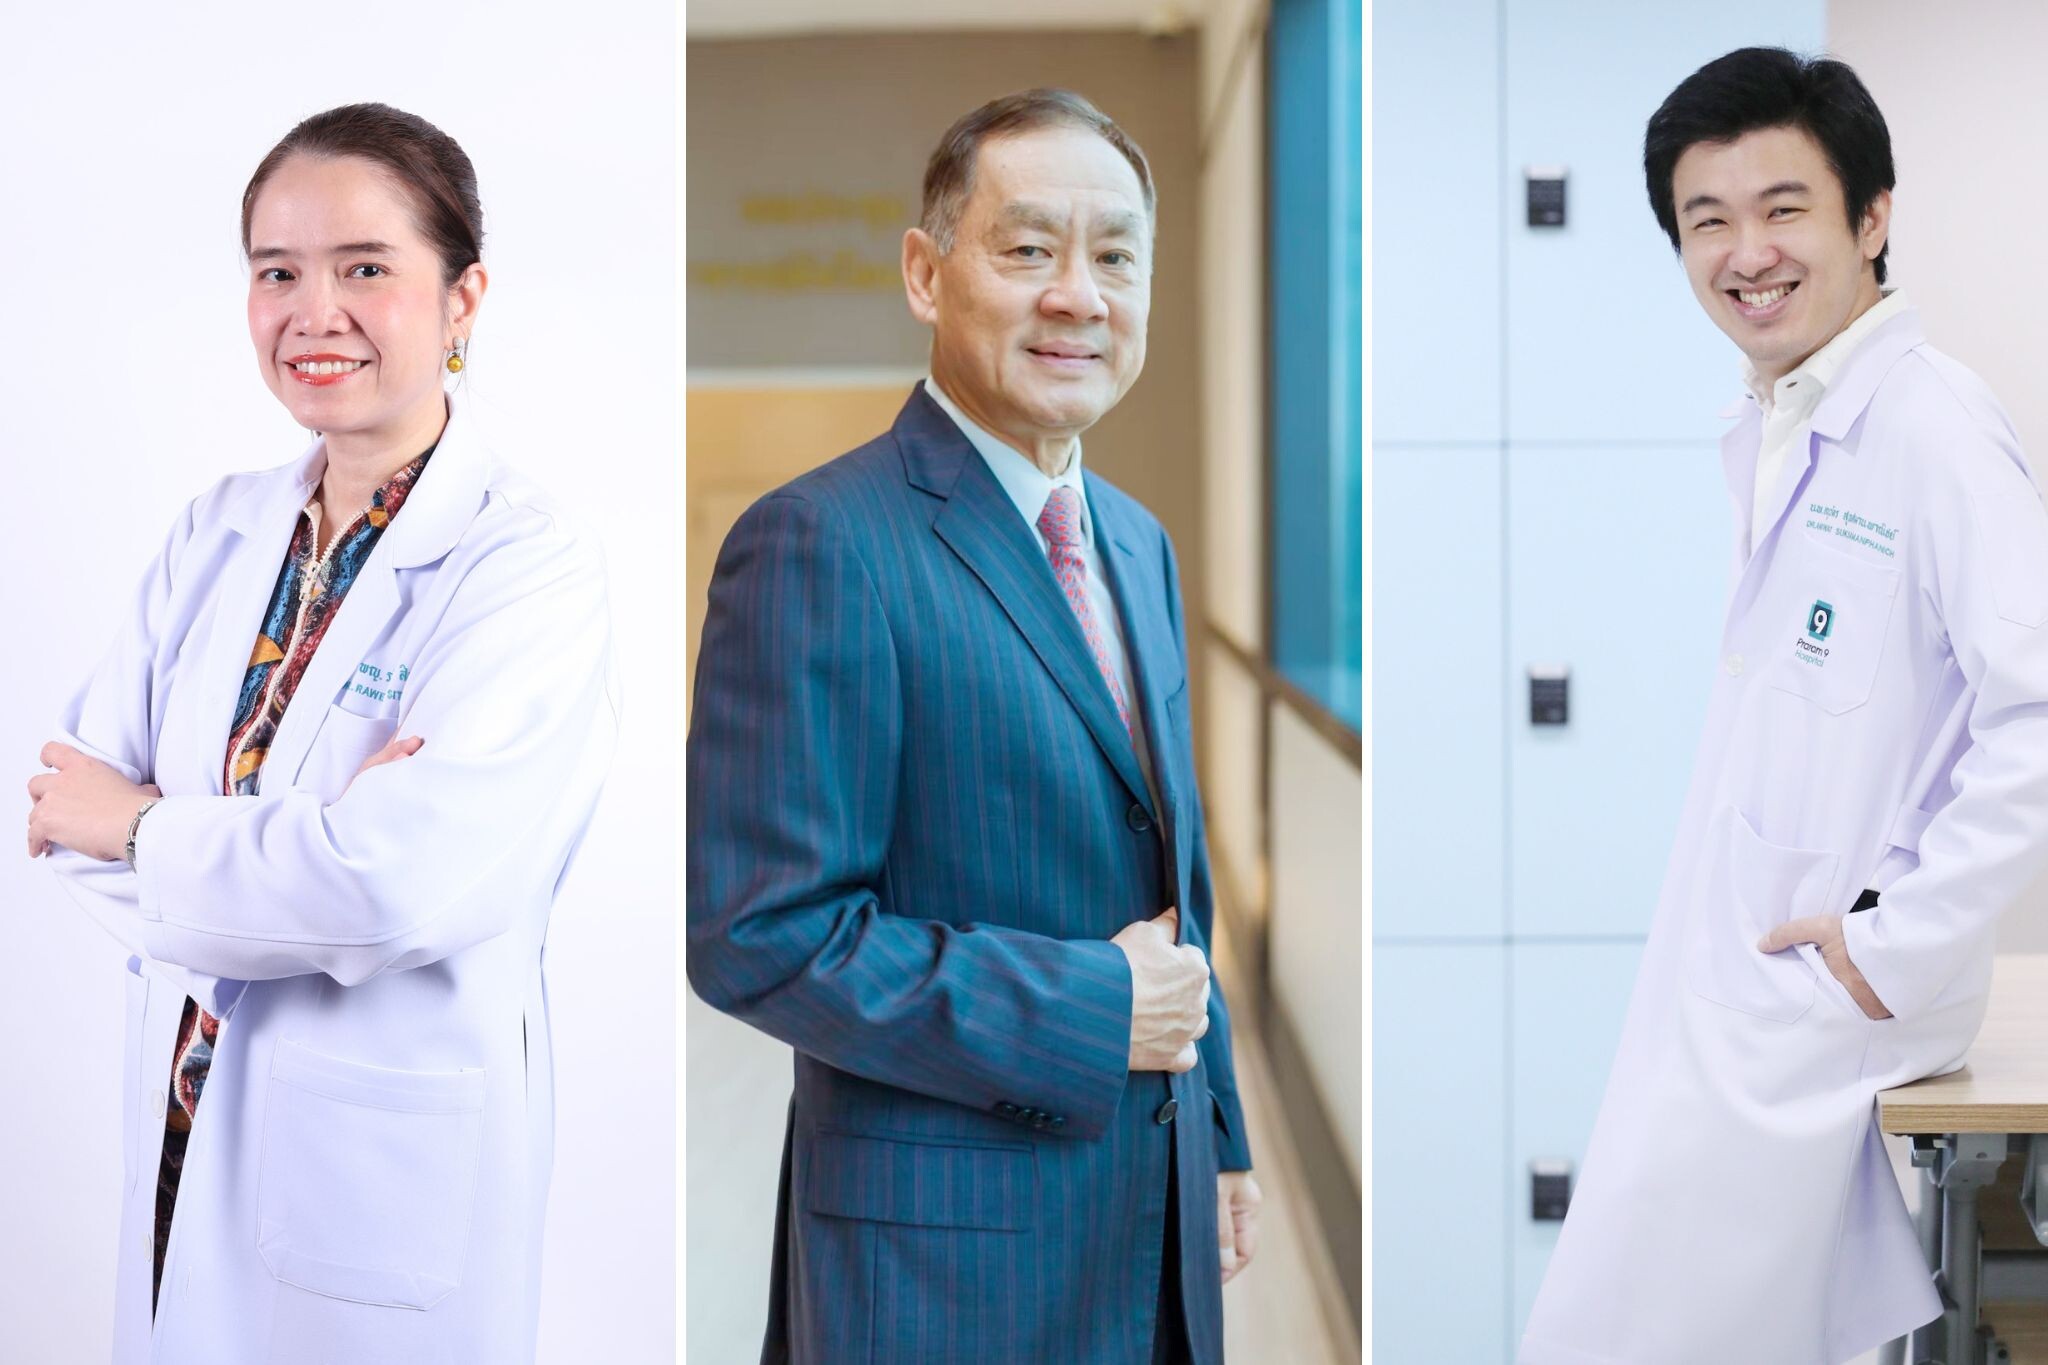 โรงพยาบาลพระรามเก้า ผนึกกำลัง ผู้นำเทคโนโลยีสุดล้ำจากเกาหลี ร่วมพัฒนาเทคโนโลยีระบบการแพทย์ทางไกล พลิกวงการแพทย์ไทย สู่ Digital Healthcare ยกโรงพยาบาลมาไว้ที่บ้าน